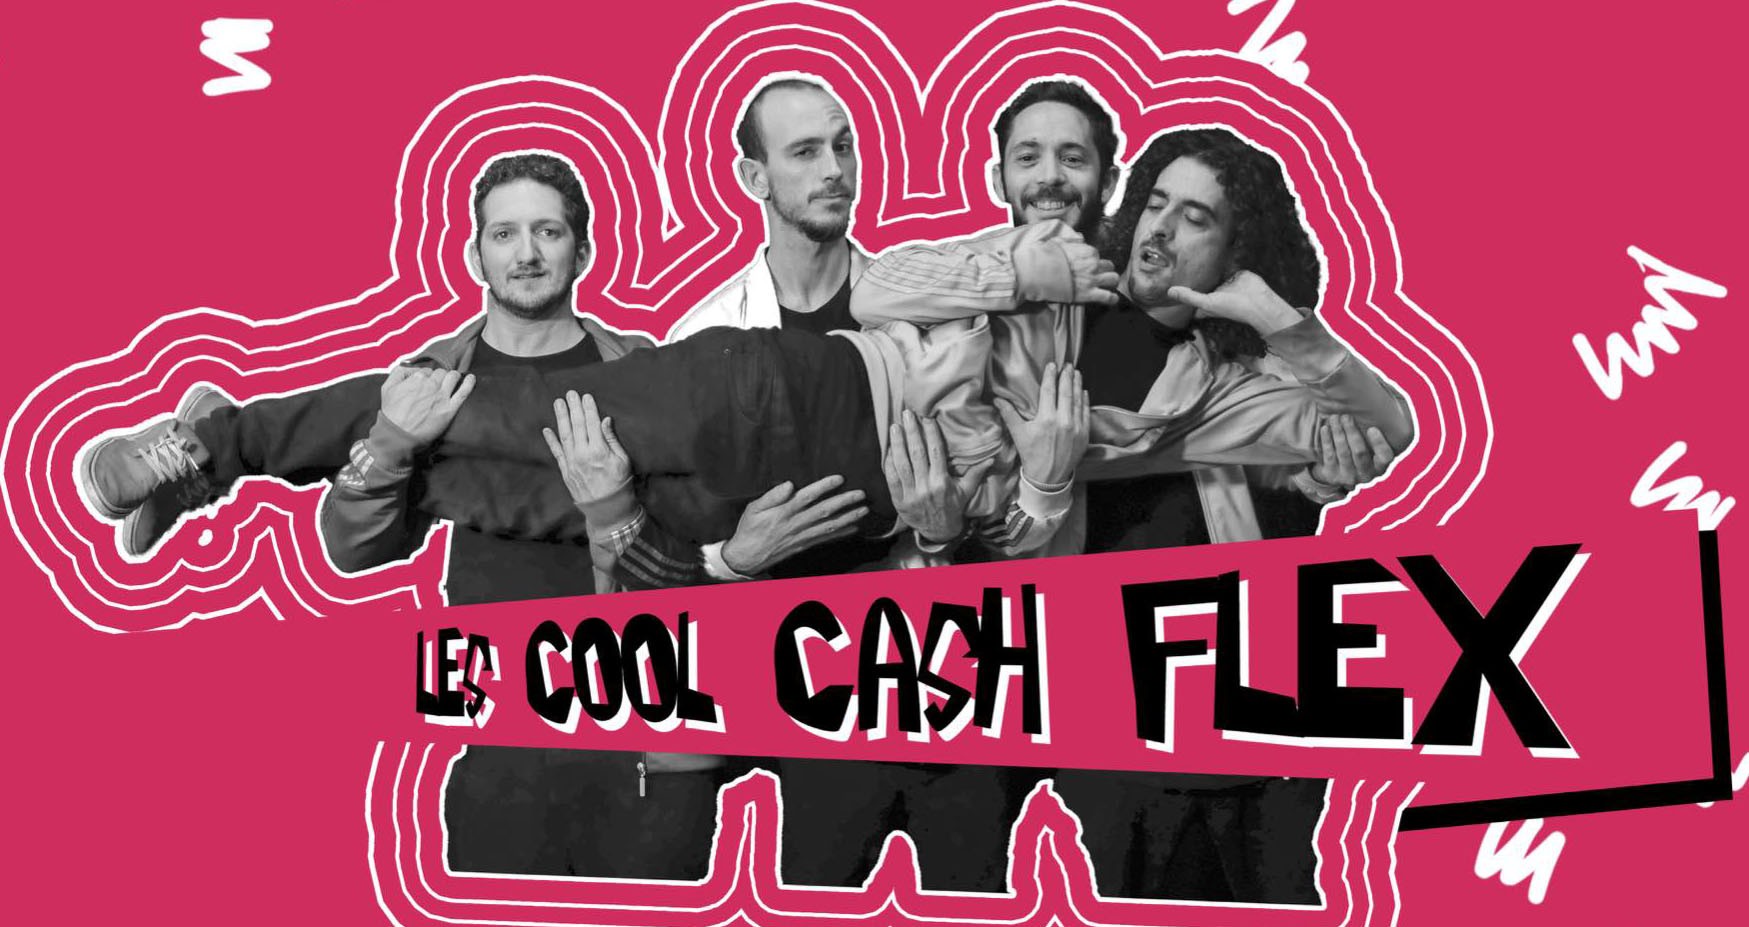 Cool cash flex